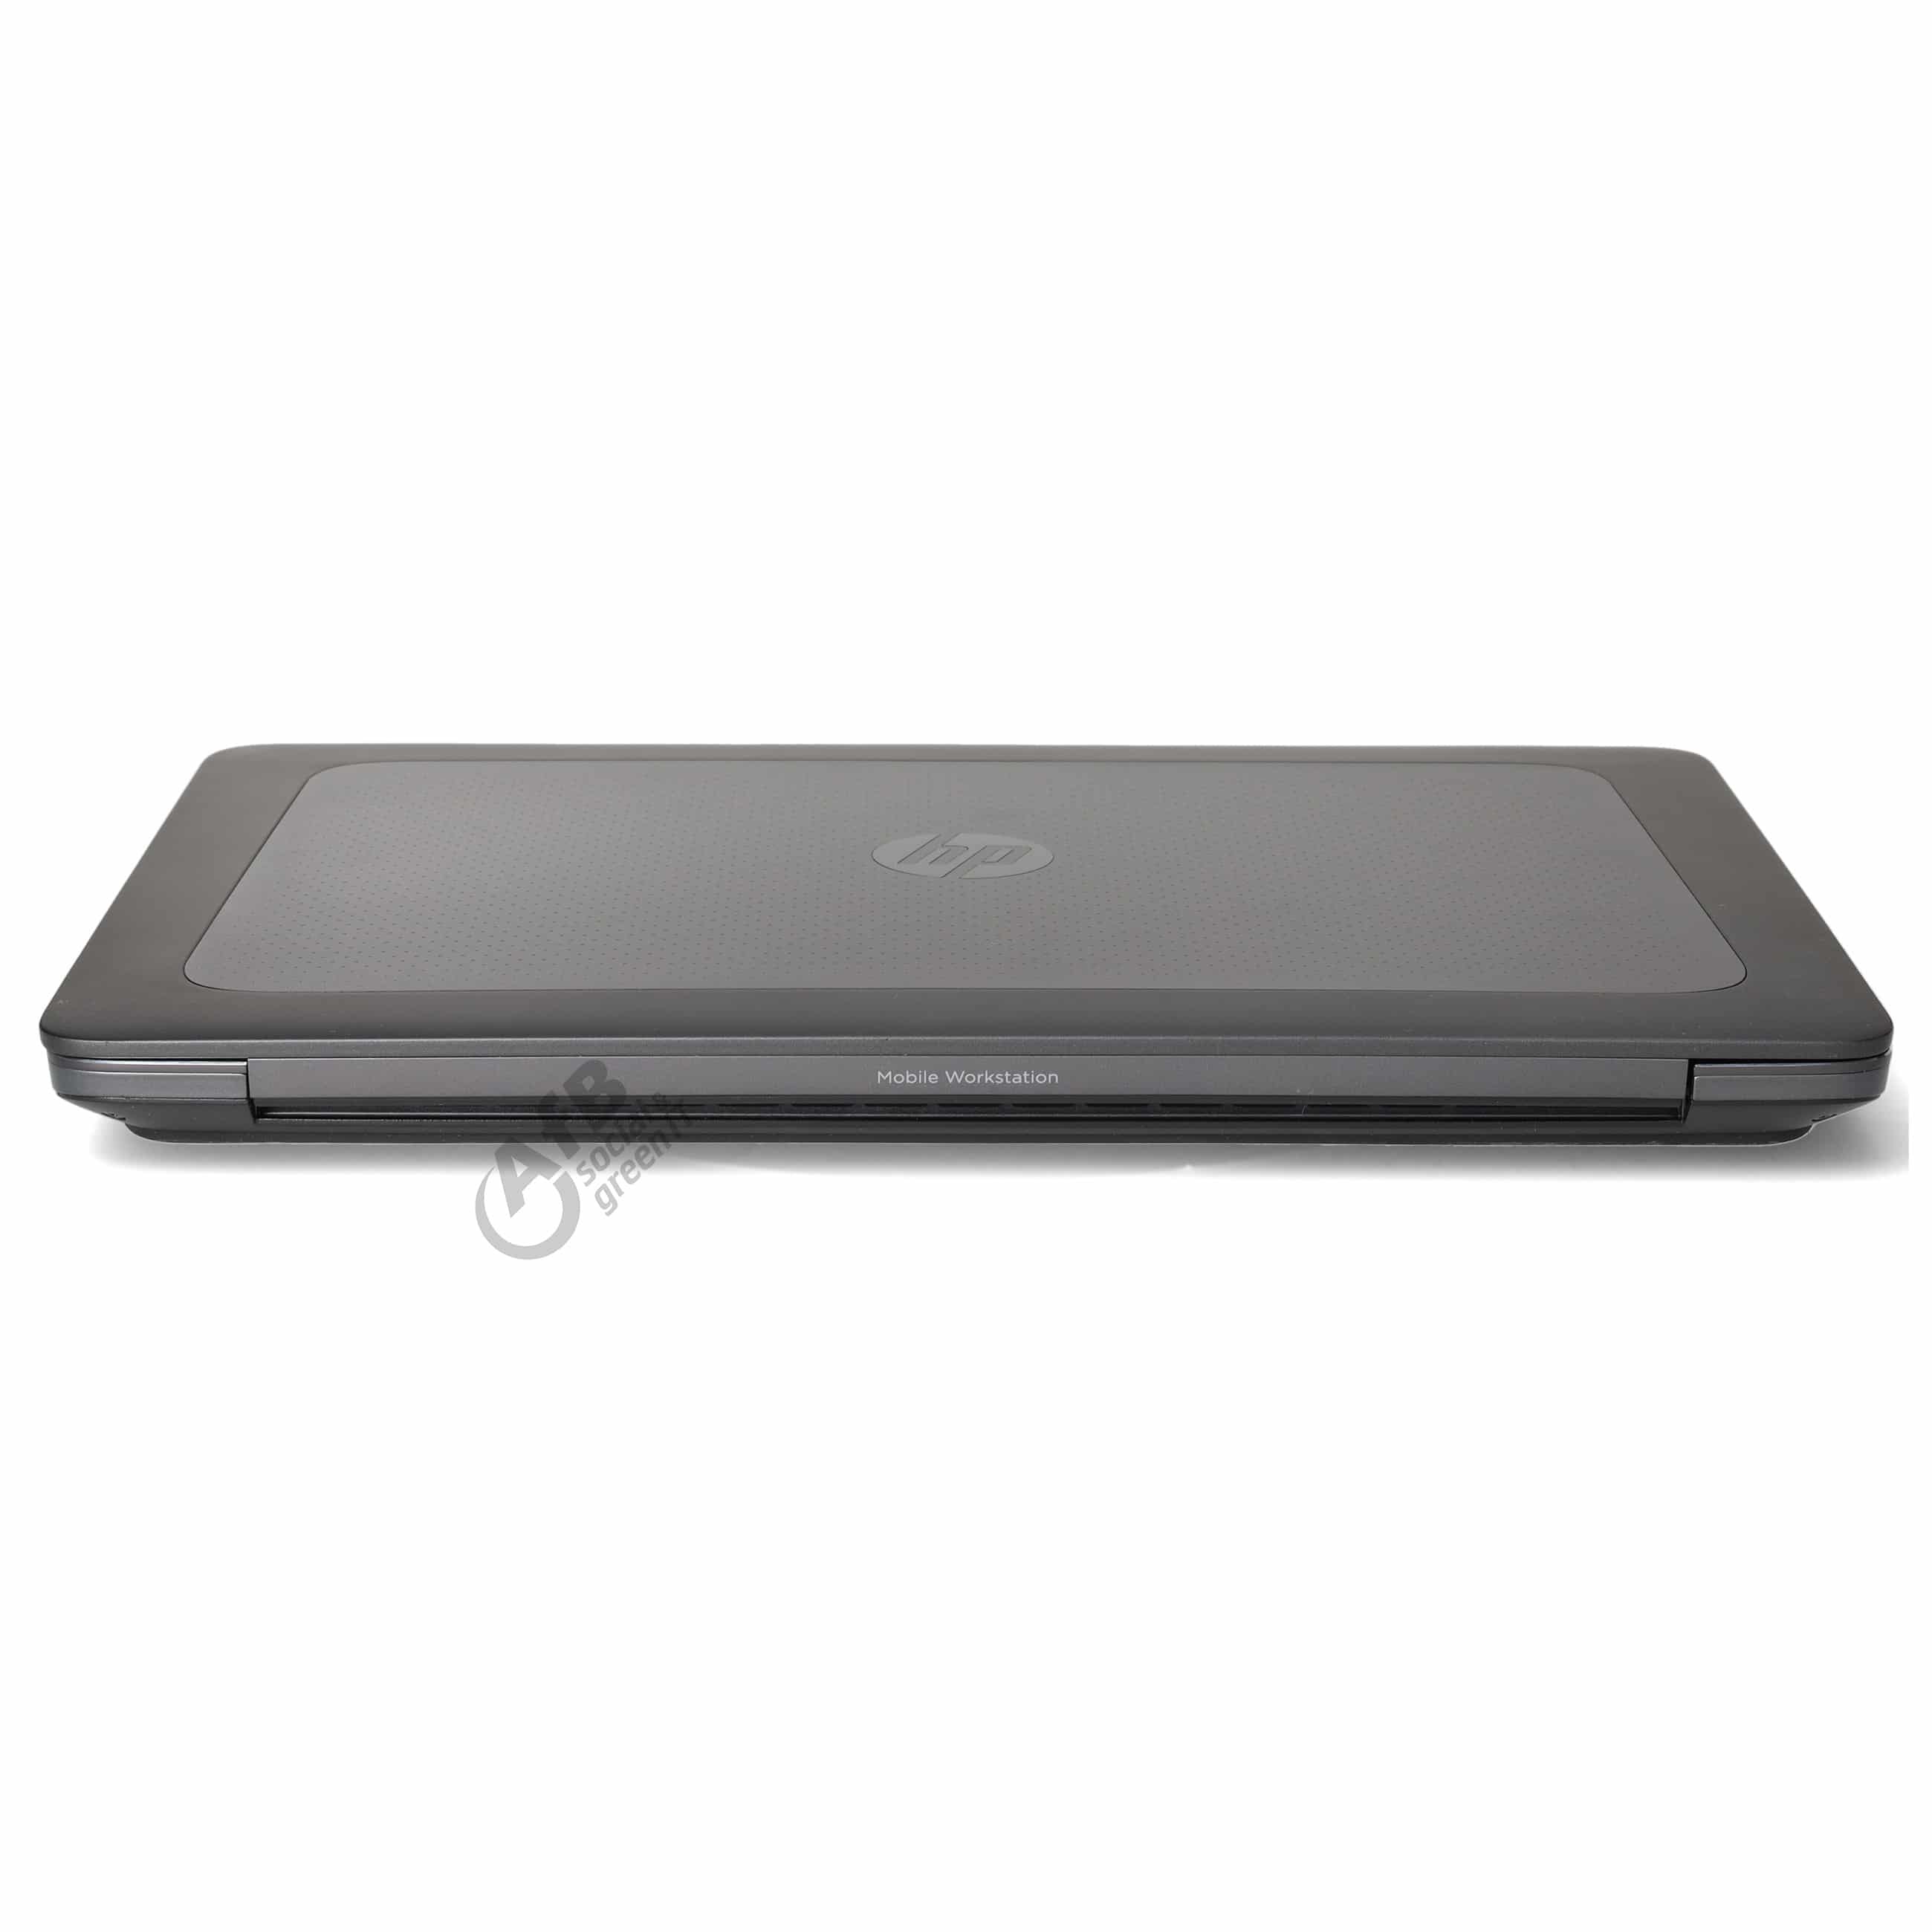 HP ZBook 15 G3 

 - 15,6 Zoll - Intel Core i7 6820HQ @ 2,7 GHz - 16 GB DDR4 - 250 GB SSD - Quadro M1000M - 1920 x 1080 FHD - Windows 10 Professional